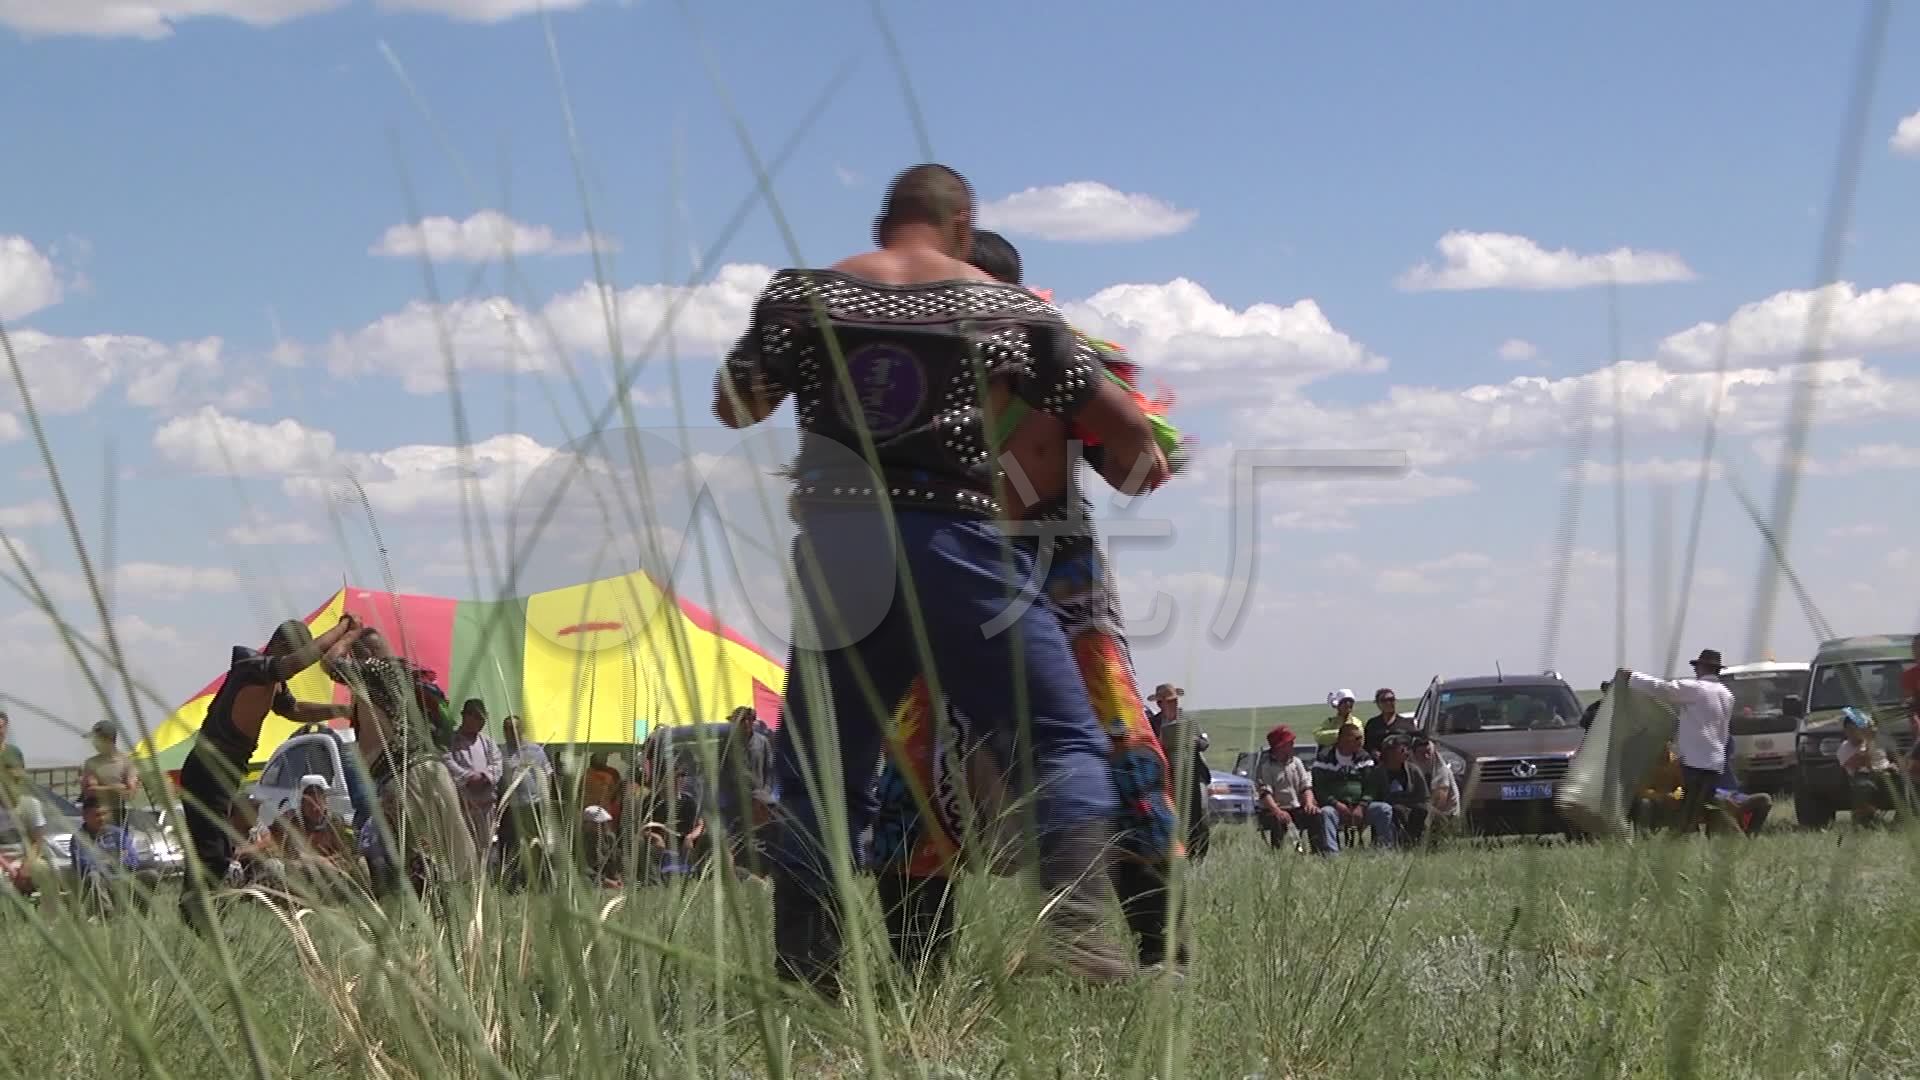 陆军国际运动会在蒙古举行 各国战马草原竞技